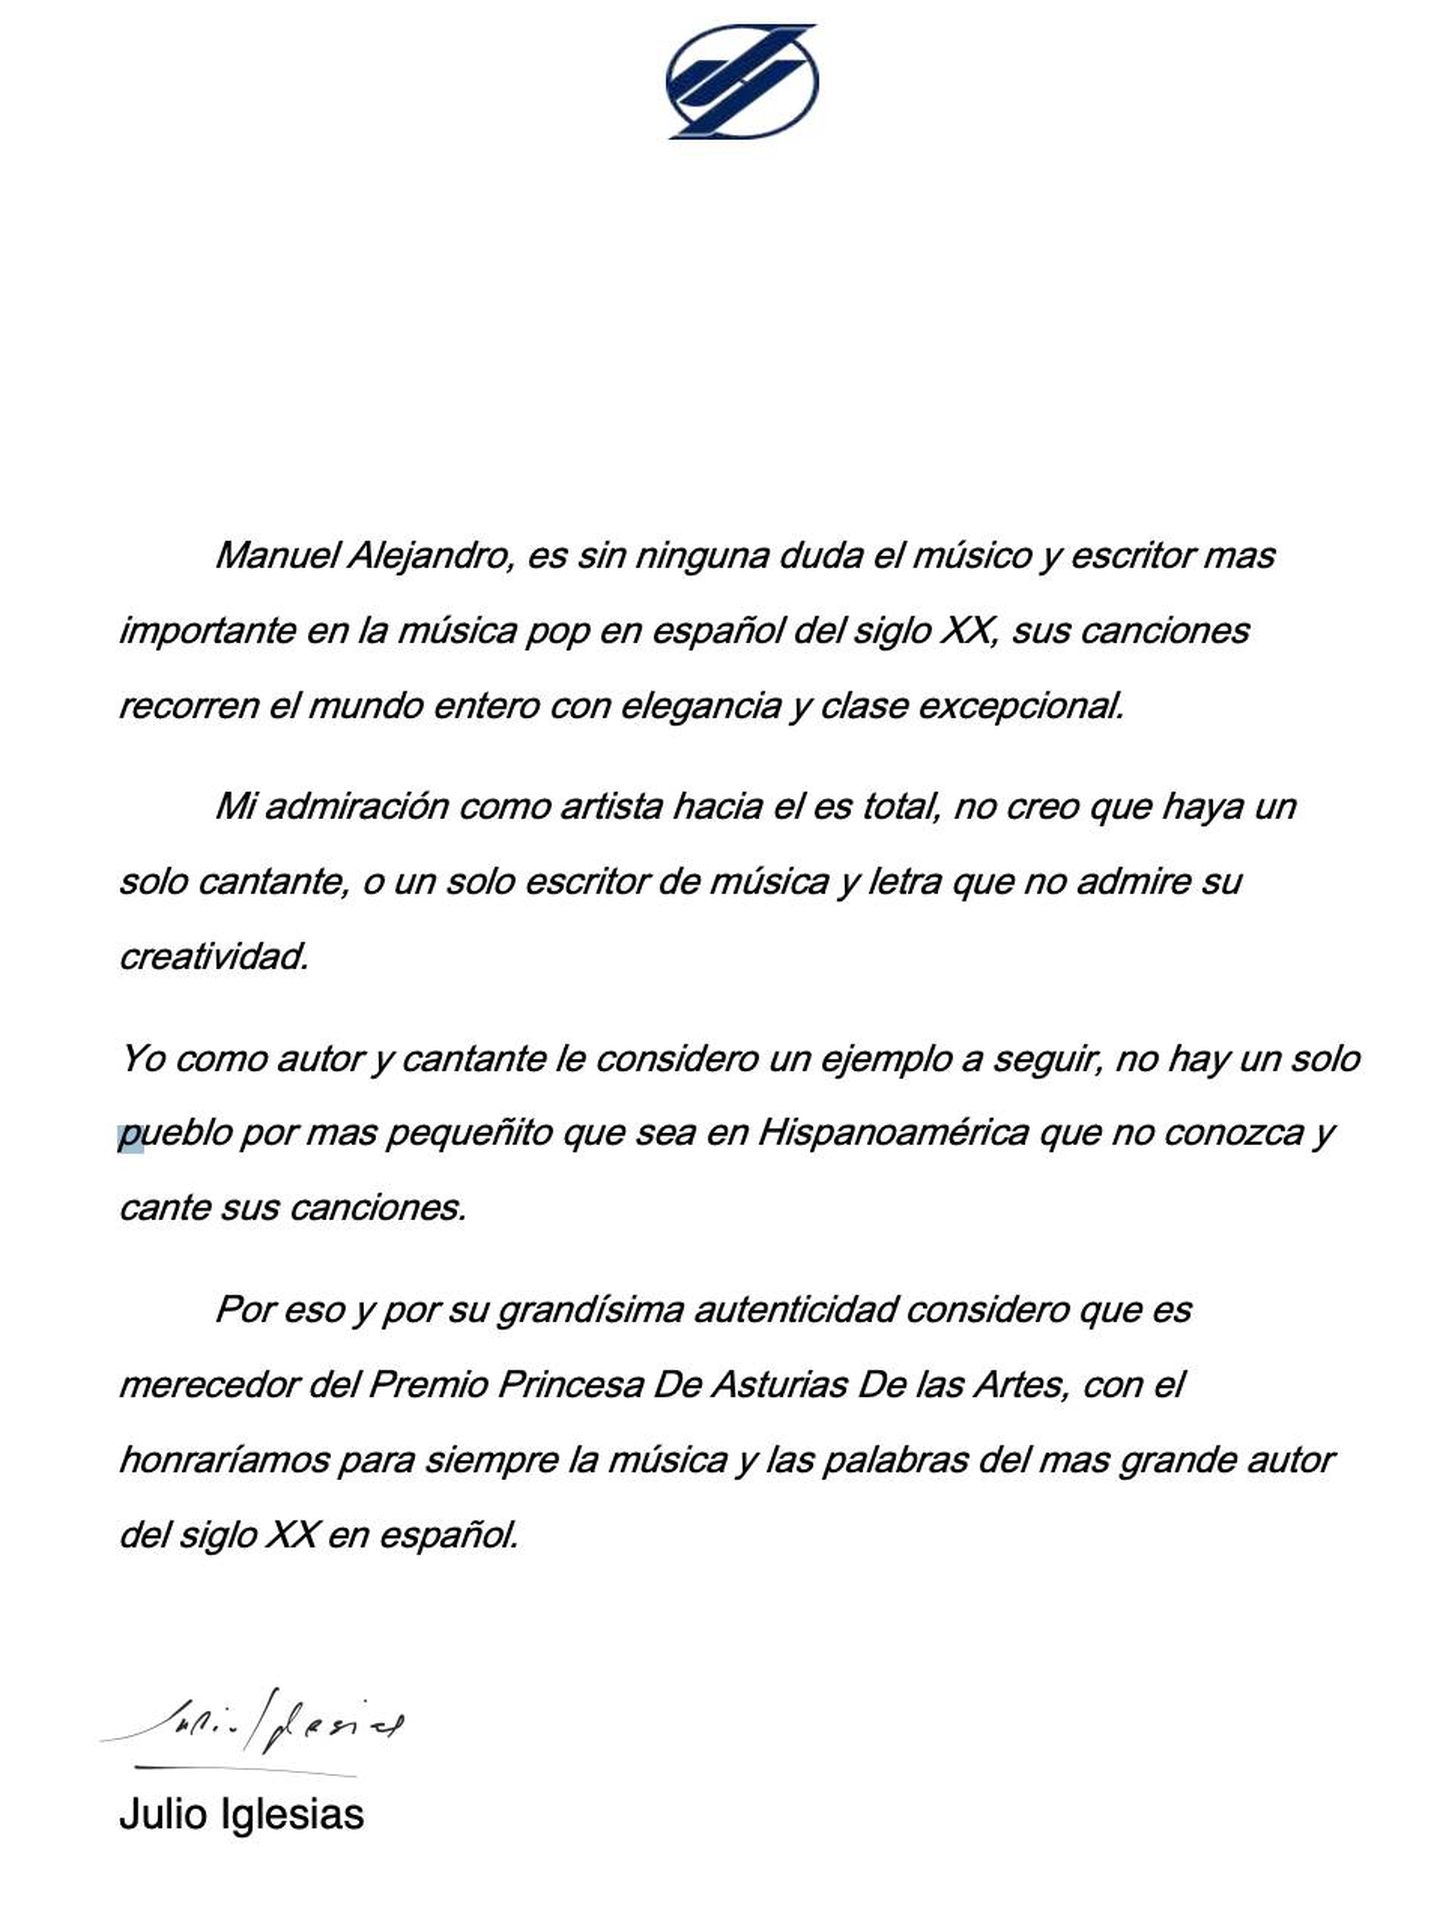 La carta de Julio Iglesias.